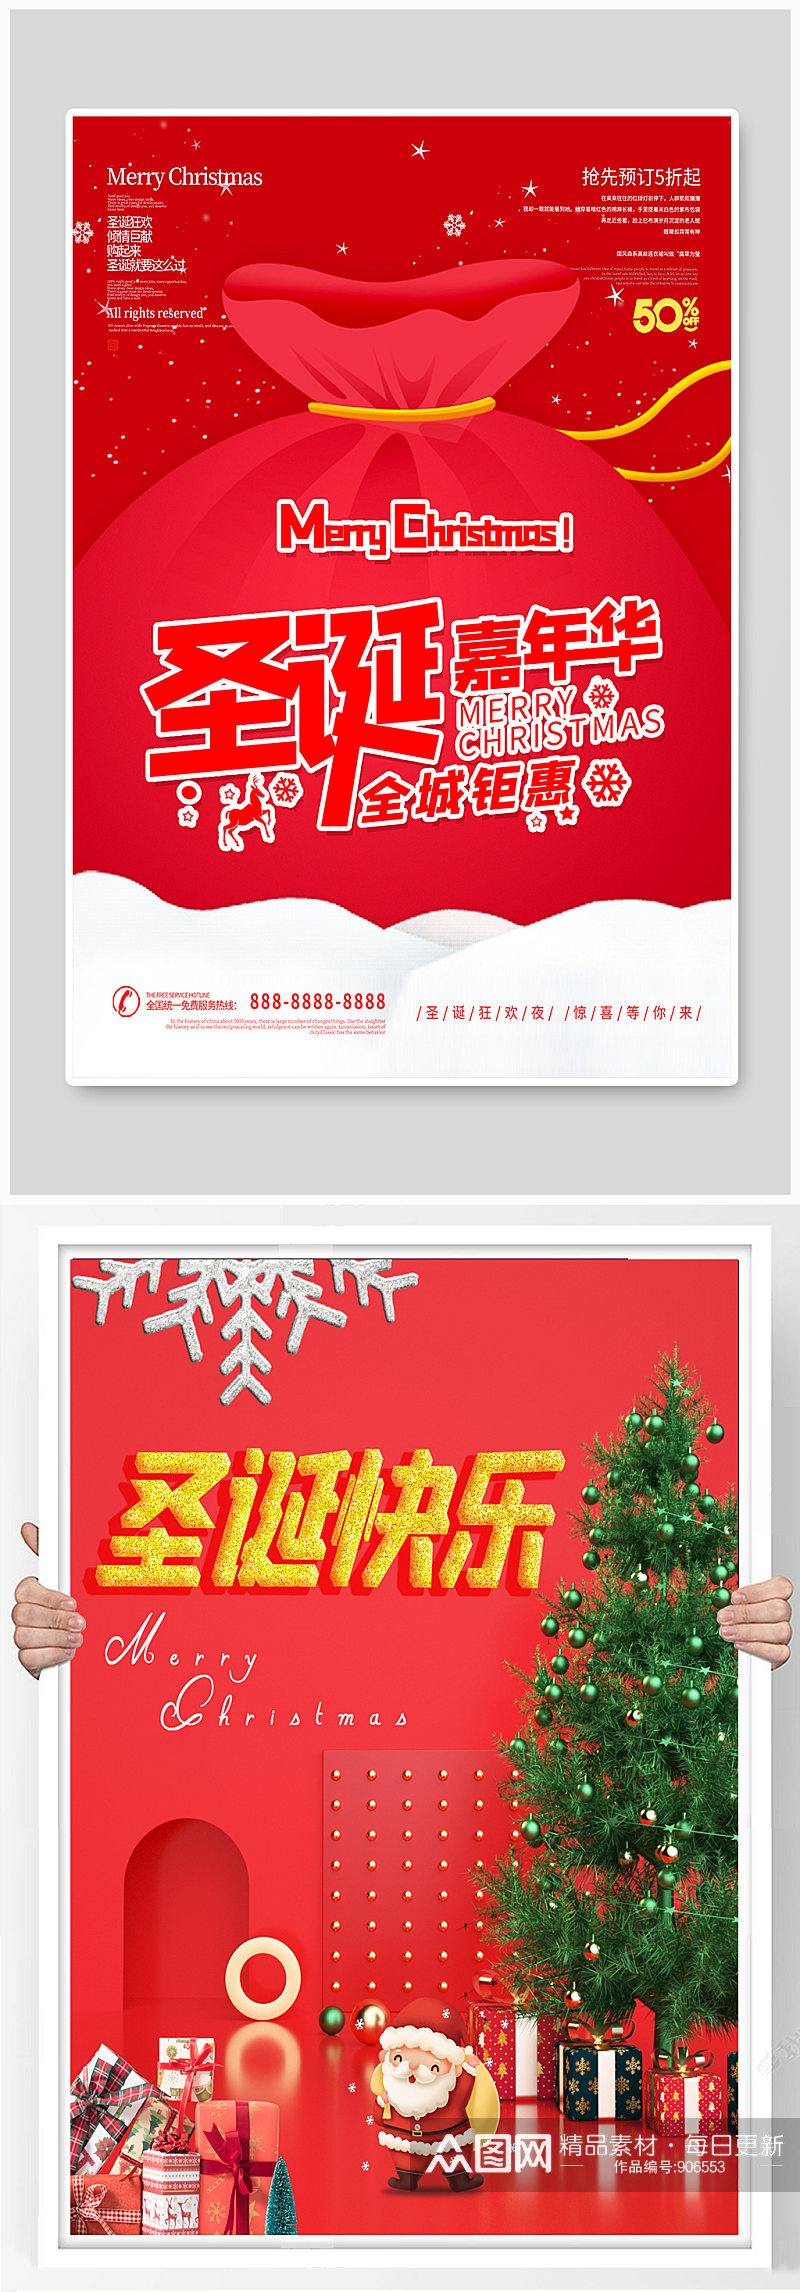 圣诞节节日活动促销创意海报素材